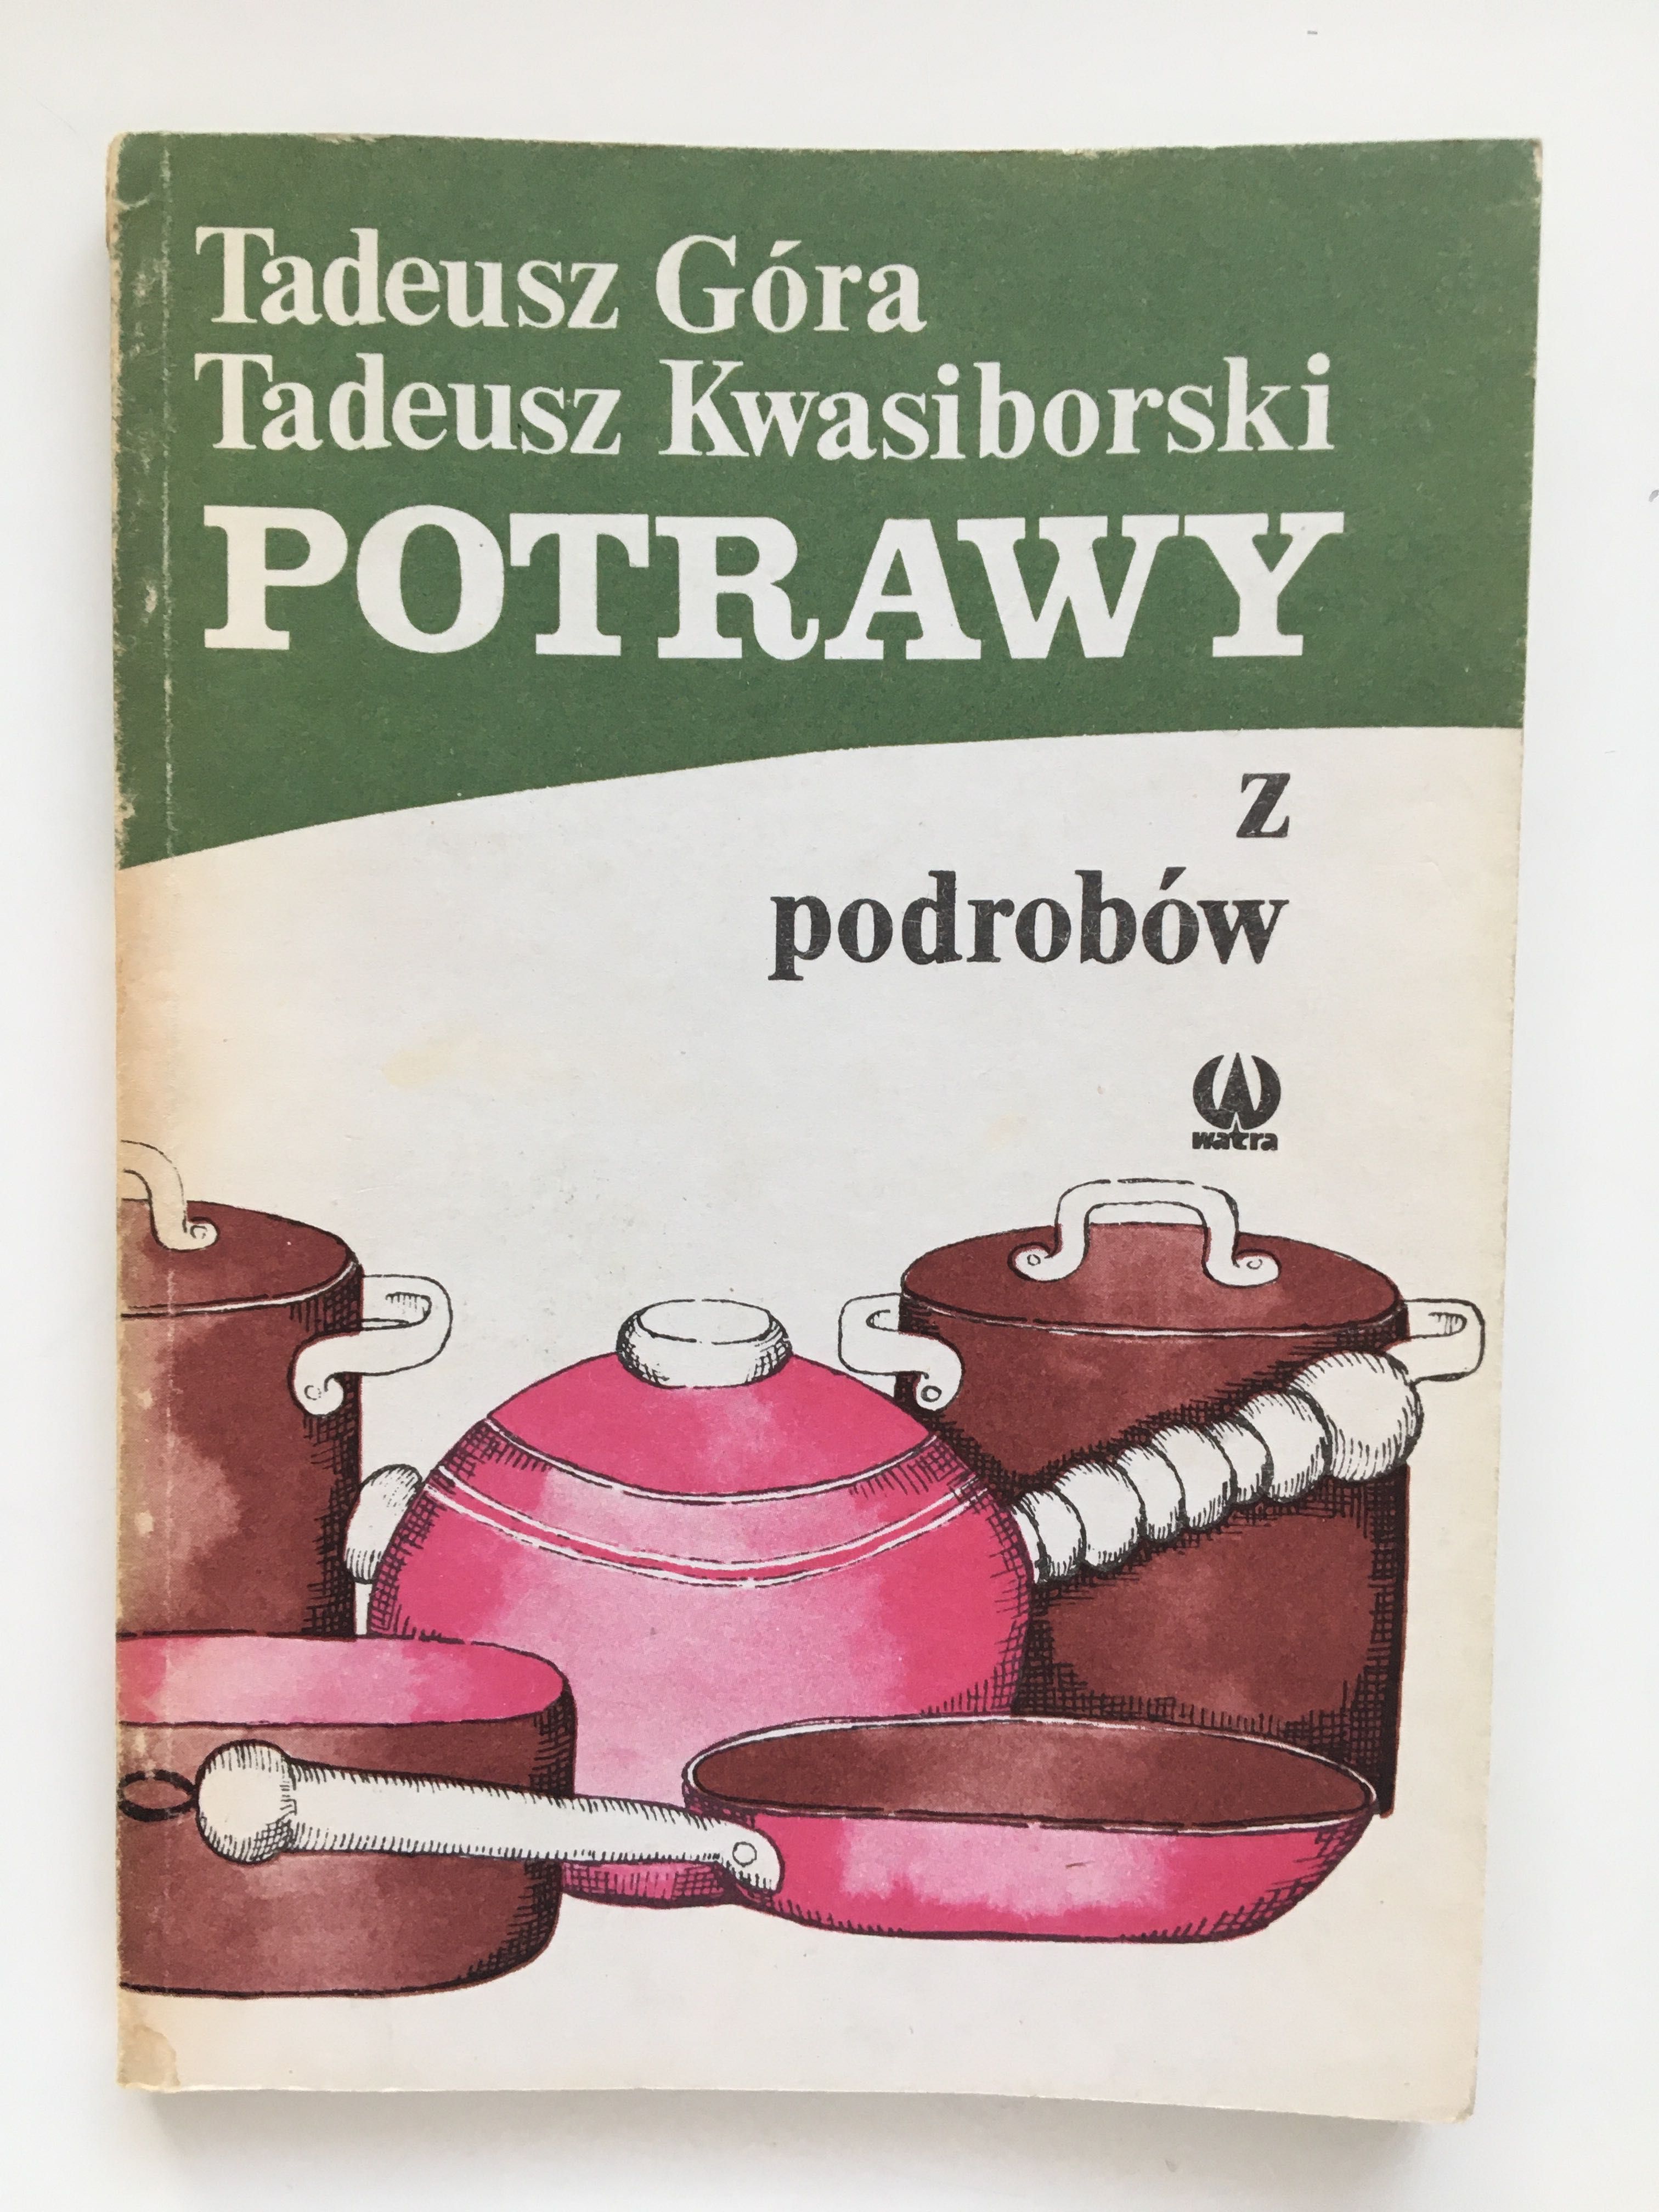 Tadeusz Góra, Tadeusz Kwasiborski "Potrawy z podrobów"